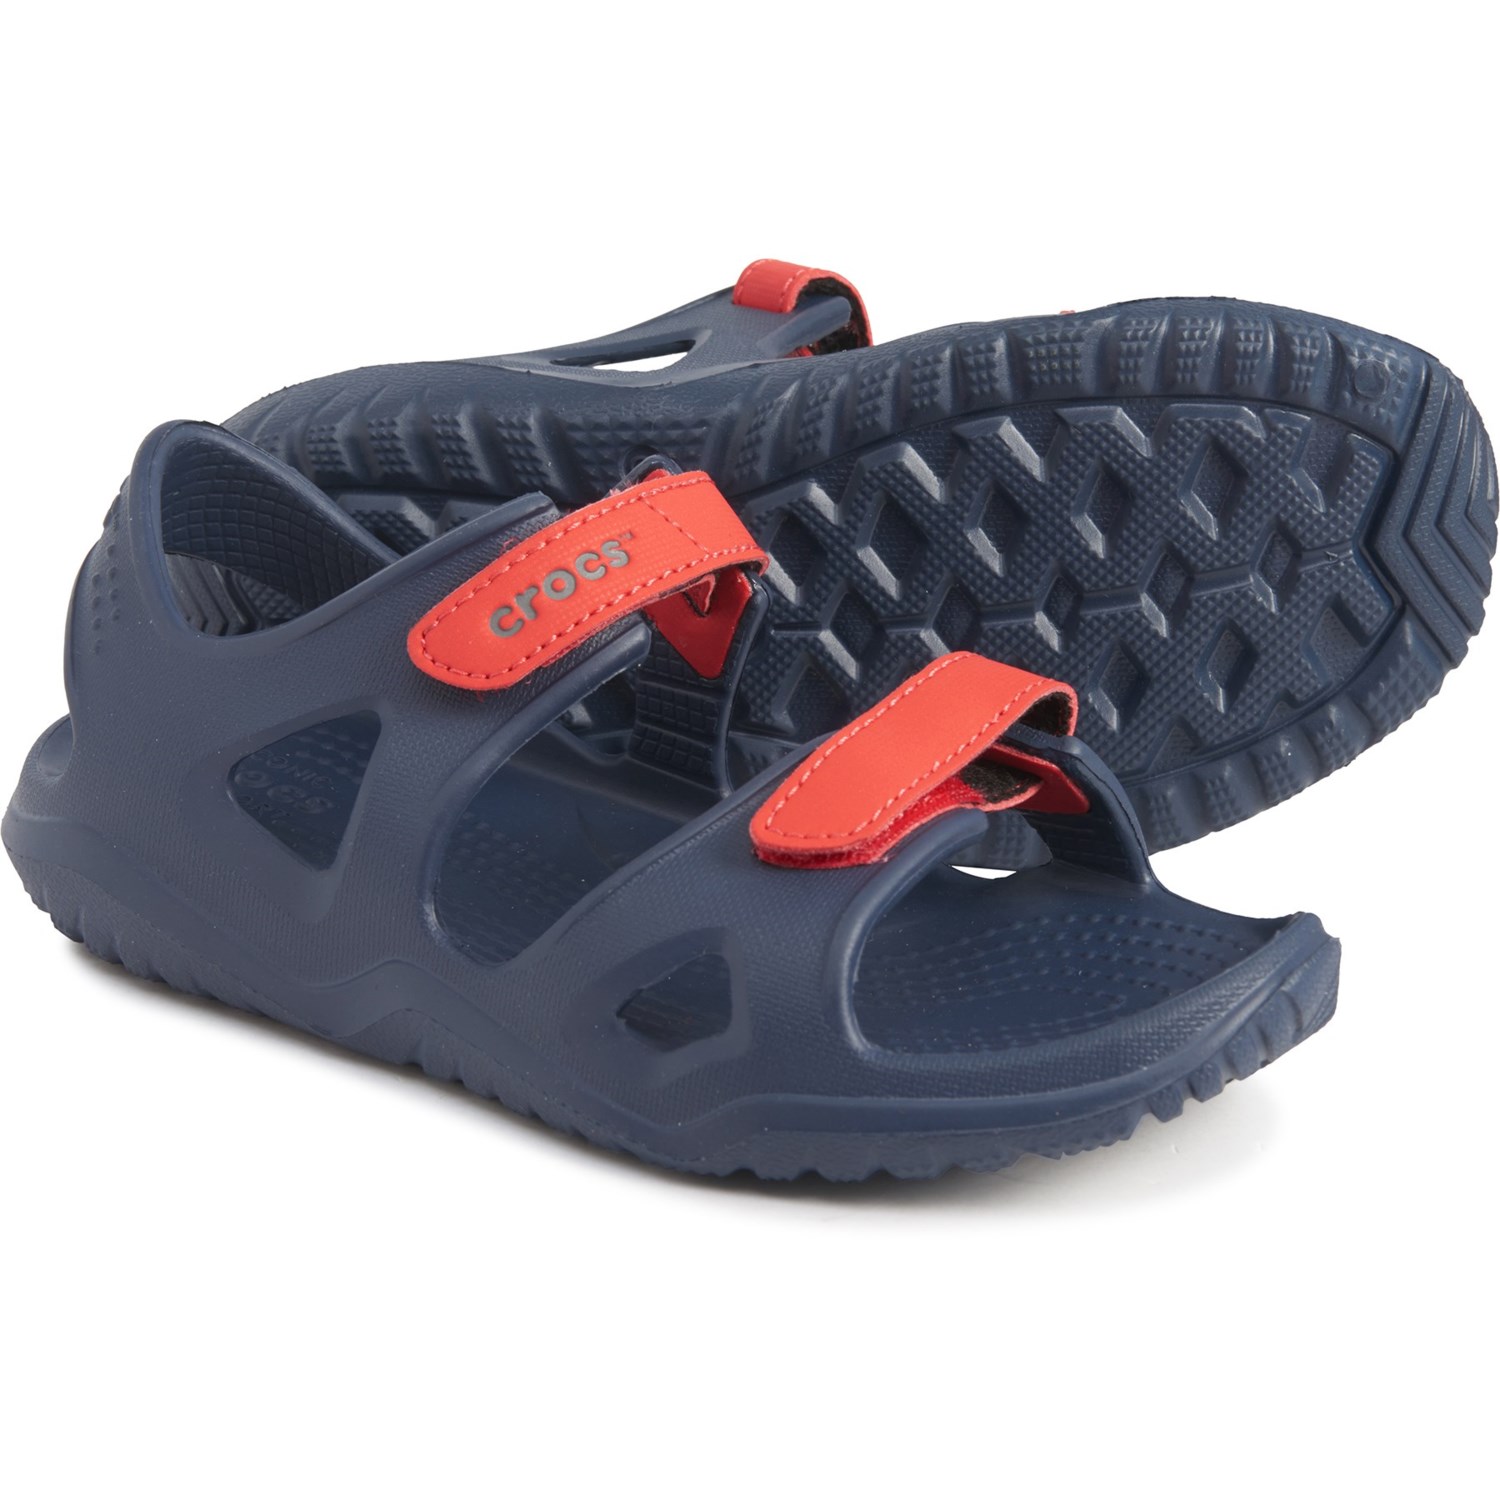 red crocs sandals